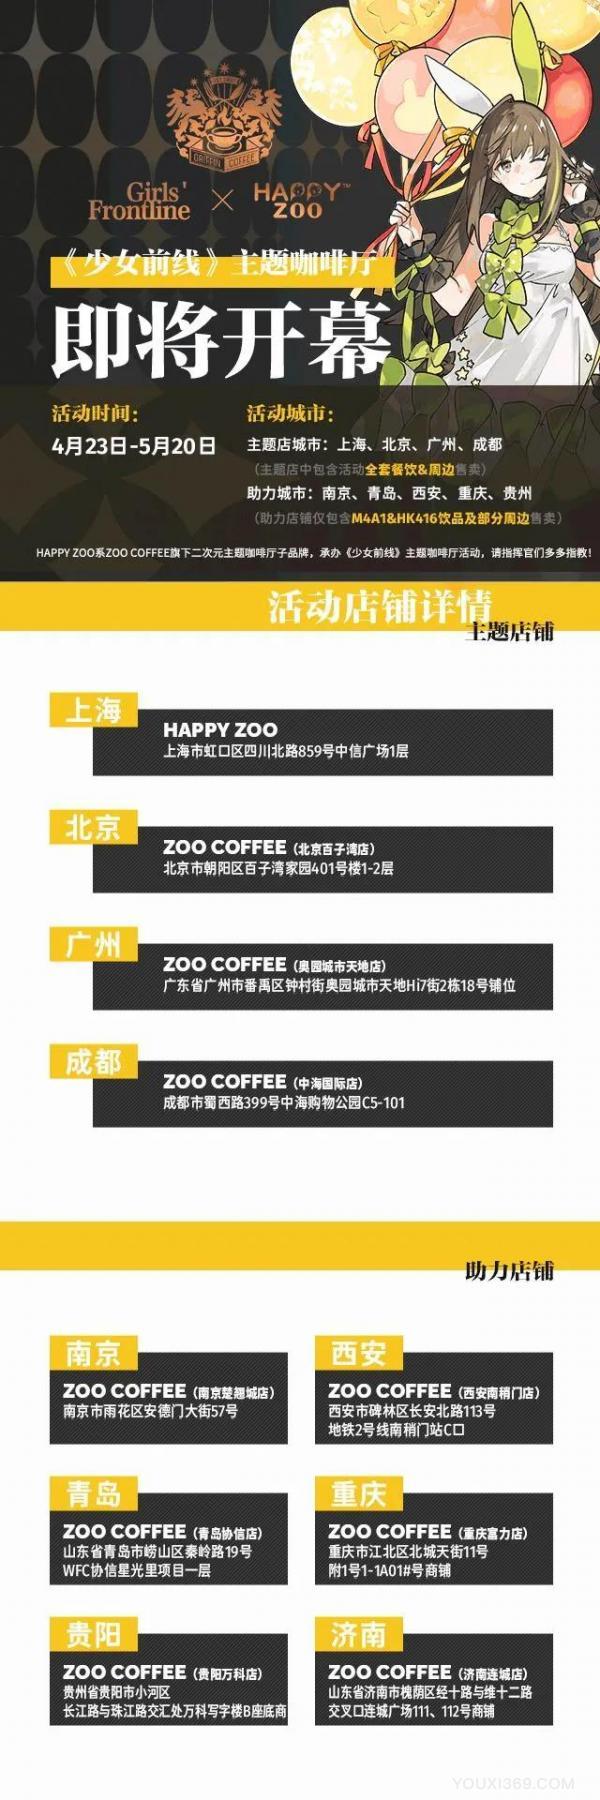 《少女前线》X HAPPY ZOO 联动主题咖啡厅即将开幕！